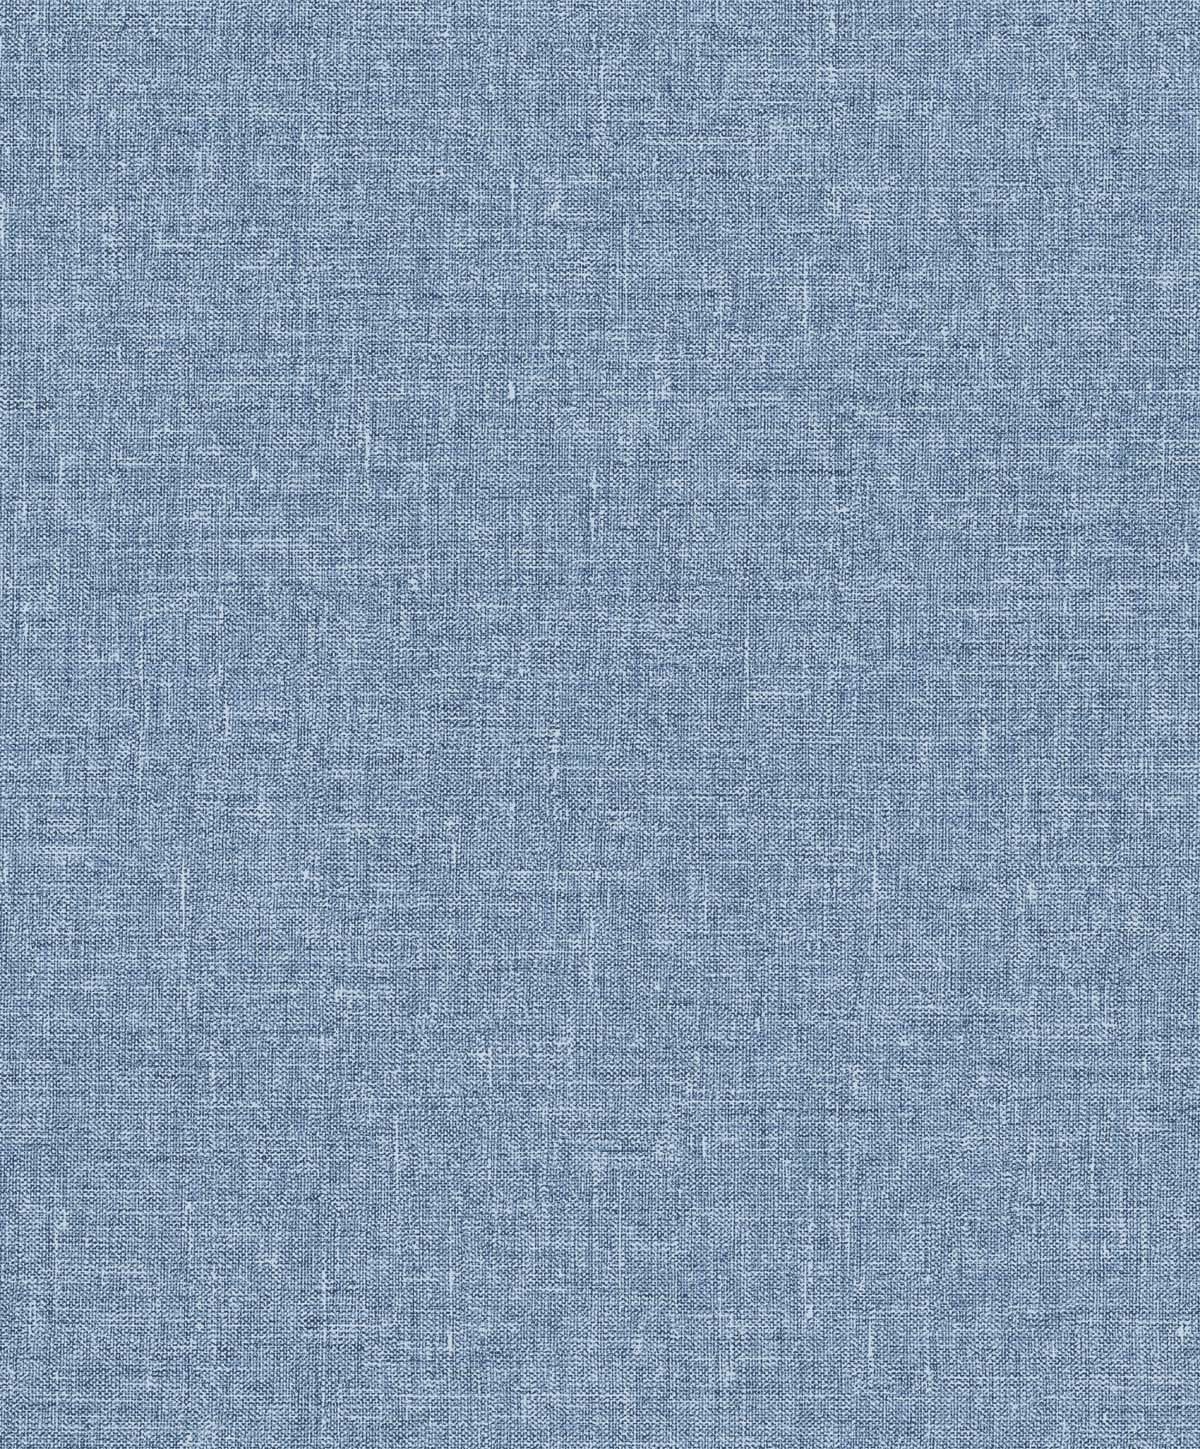 SL81112 | Soft Linen , Blue - Seabrook Designs Wallpaper